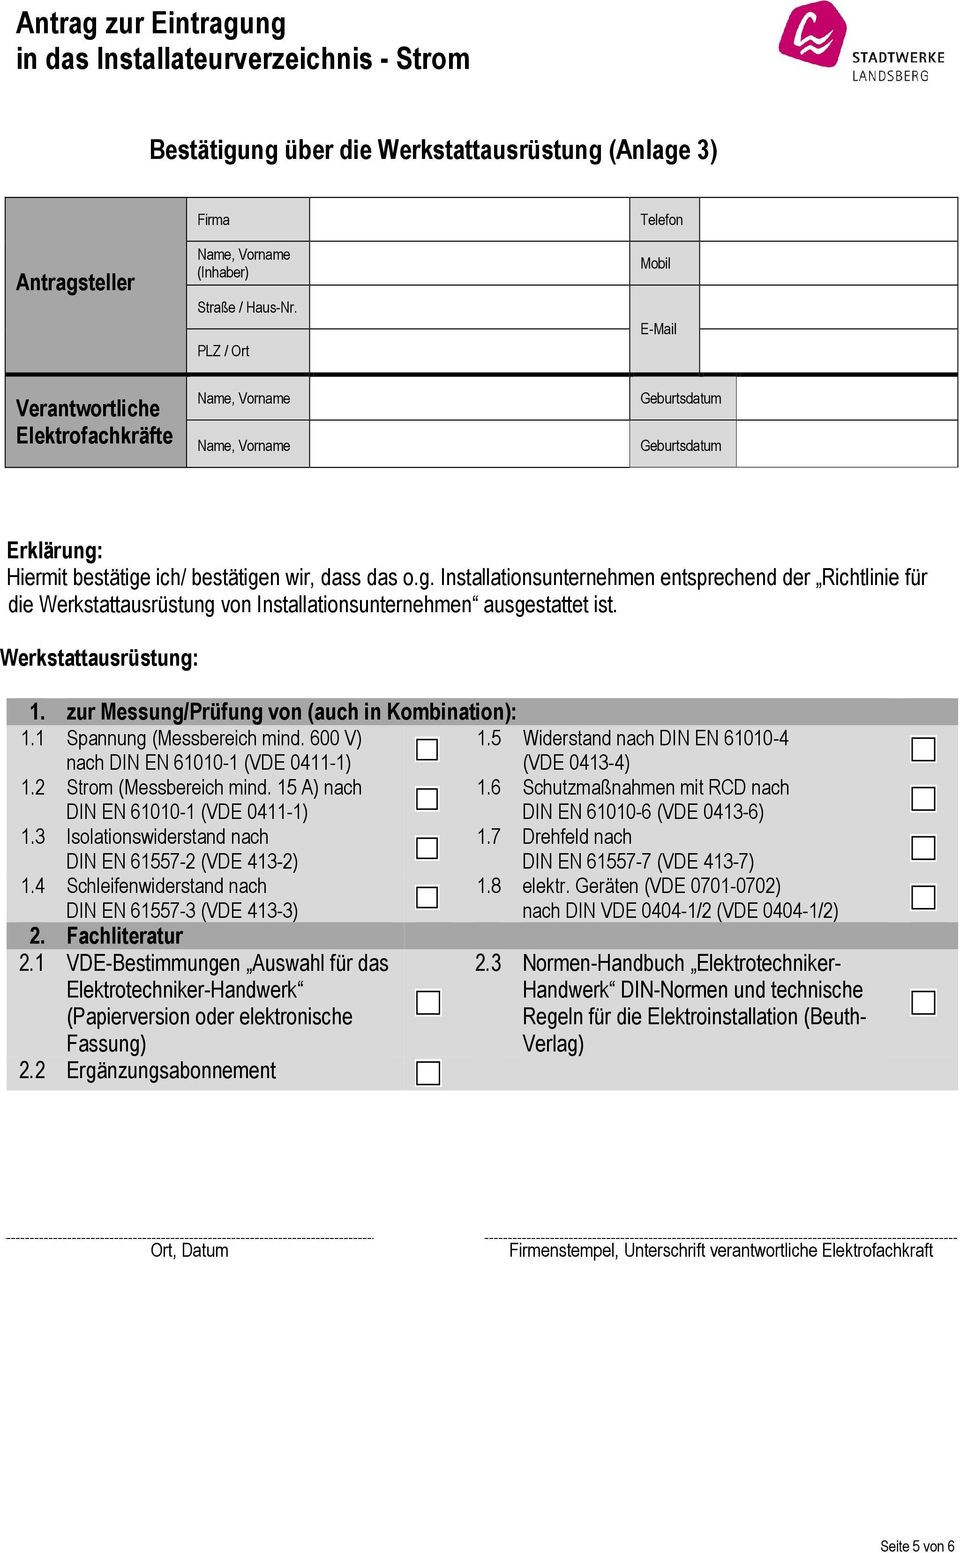 Normen-Handbuch Elektrotechniker-Handwerk
 Antrag zur Eintragung in das Installateurverzeichnis